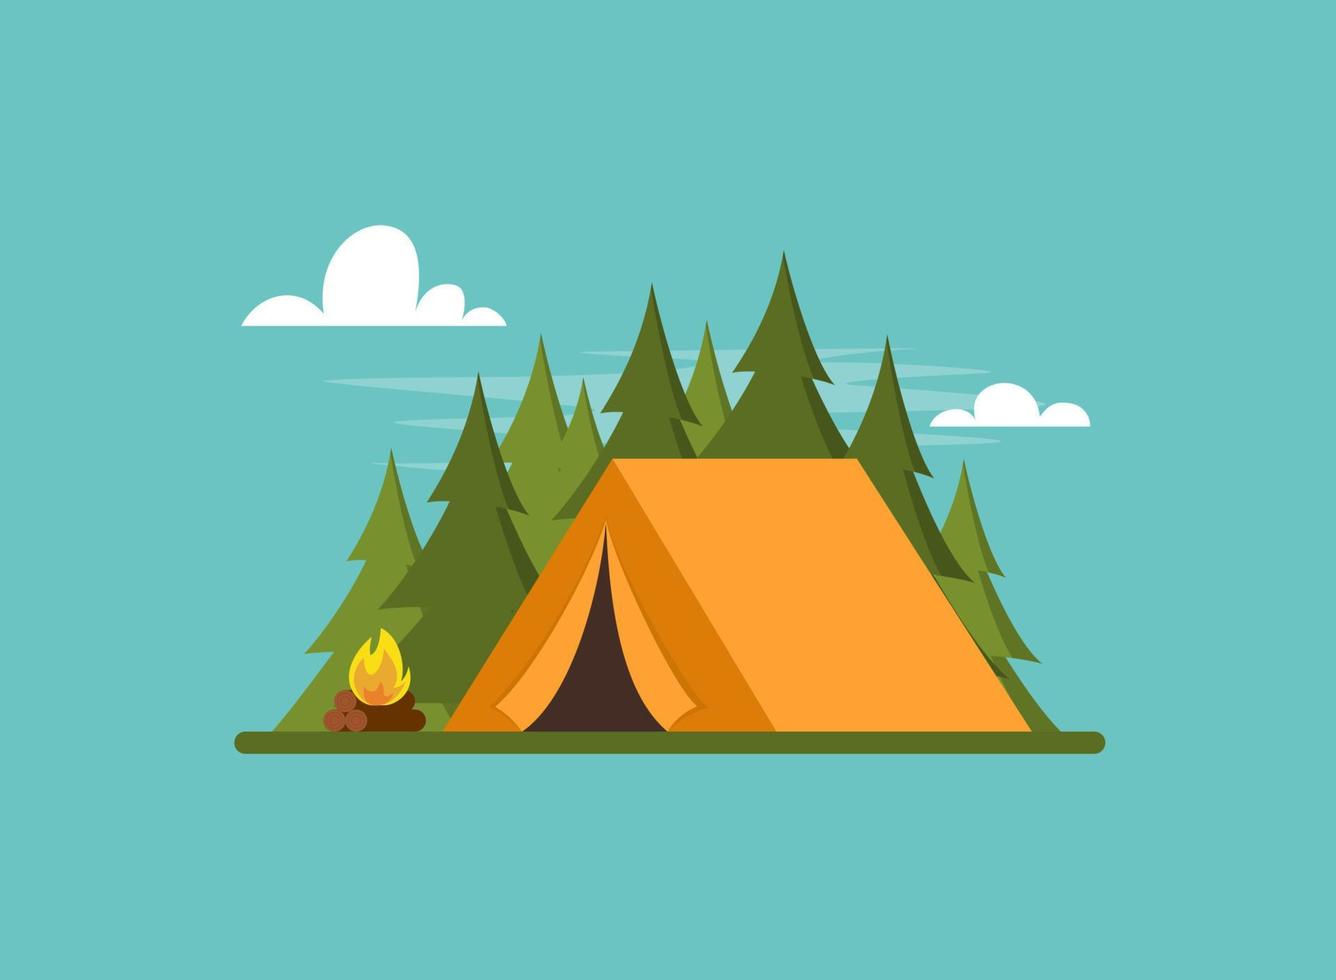 barraca laranja na floresta. tenda, floresta e fogo. banner, cartaz para escalada, caminhadas, esporte trakking, turismo de aventura, viagens, mochila. ilustração em vetor plana simples.